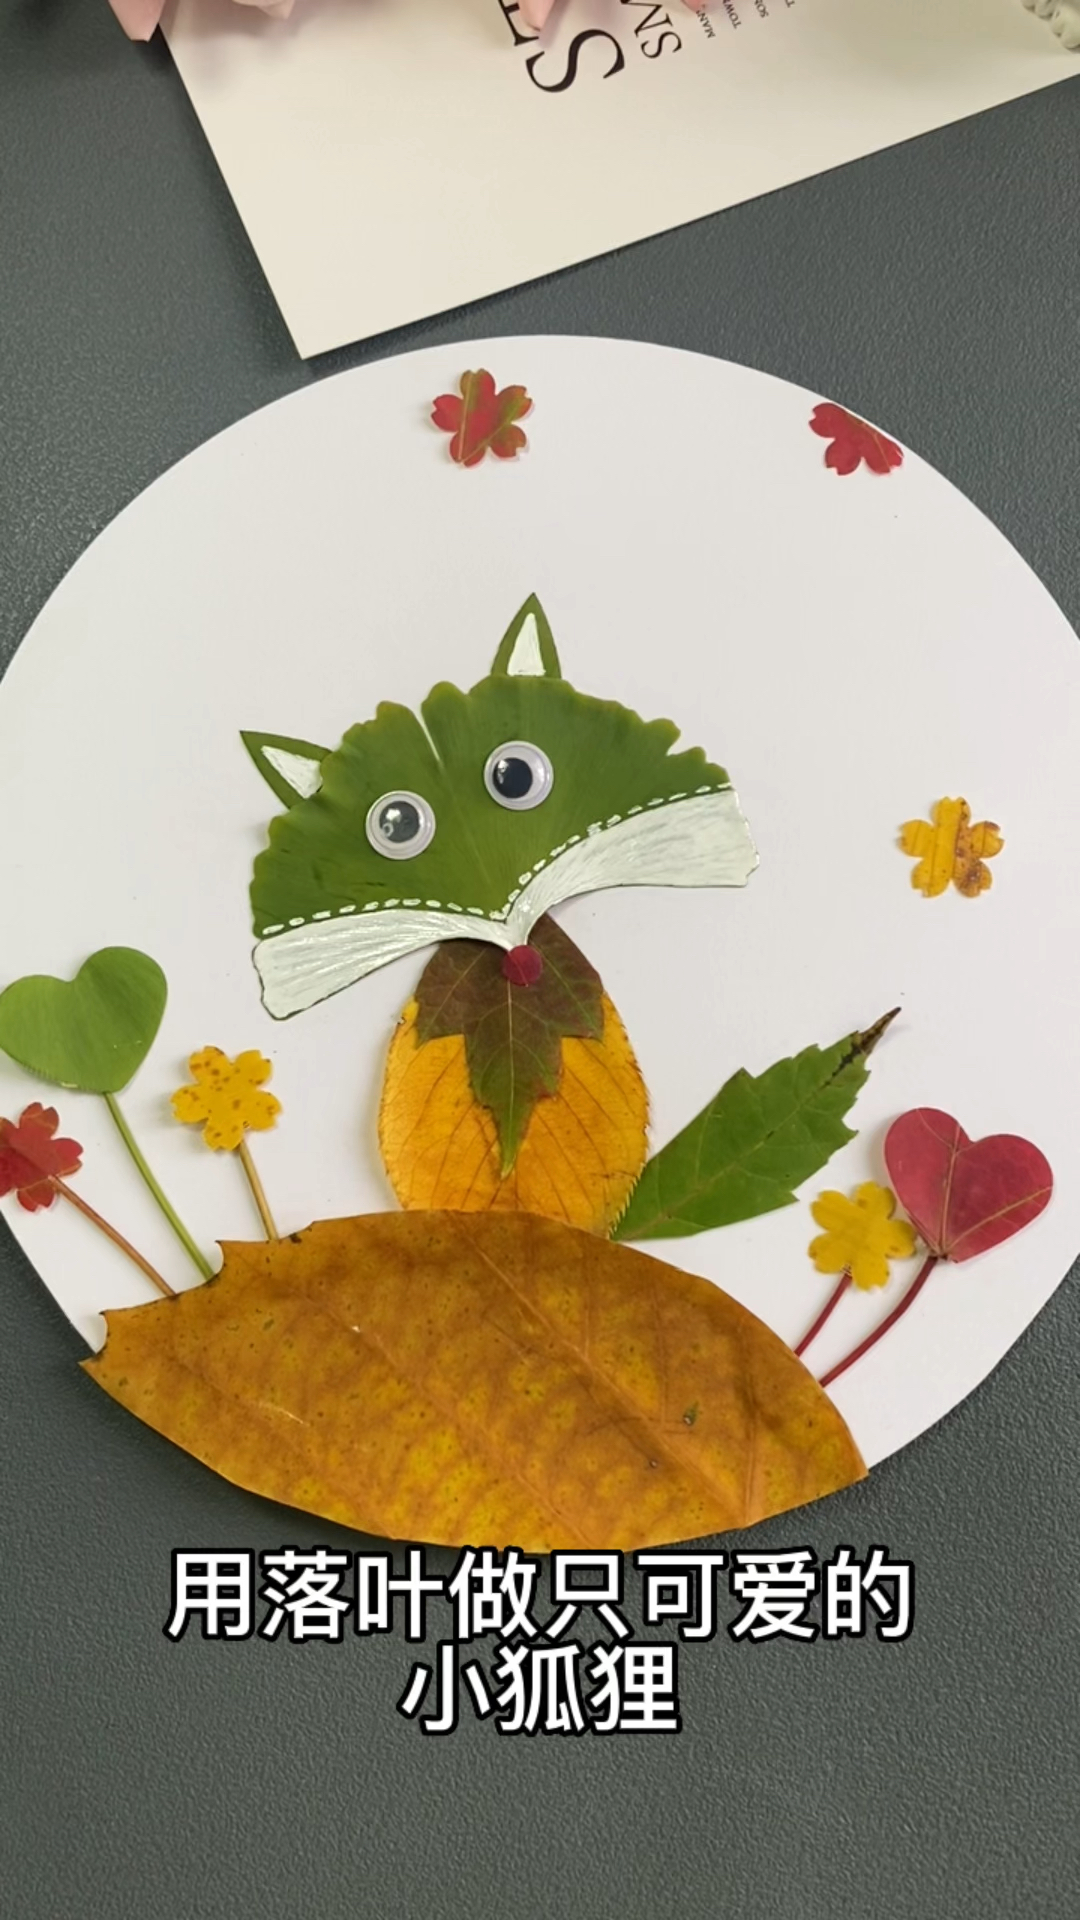 这个秋天带着孩子一起捡落叶做可爱的小狐狸树叶贴画幼儿园手工亲子